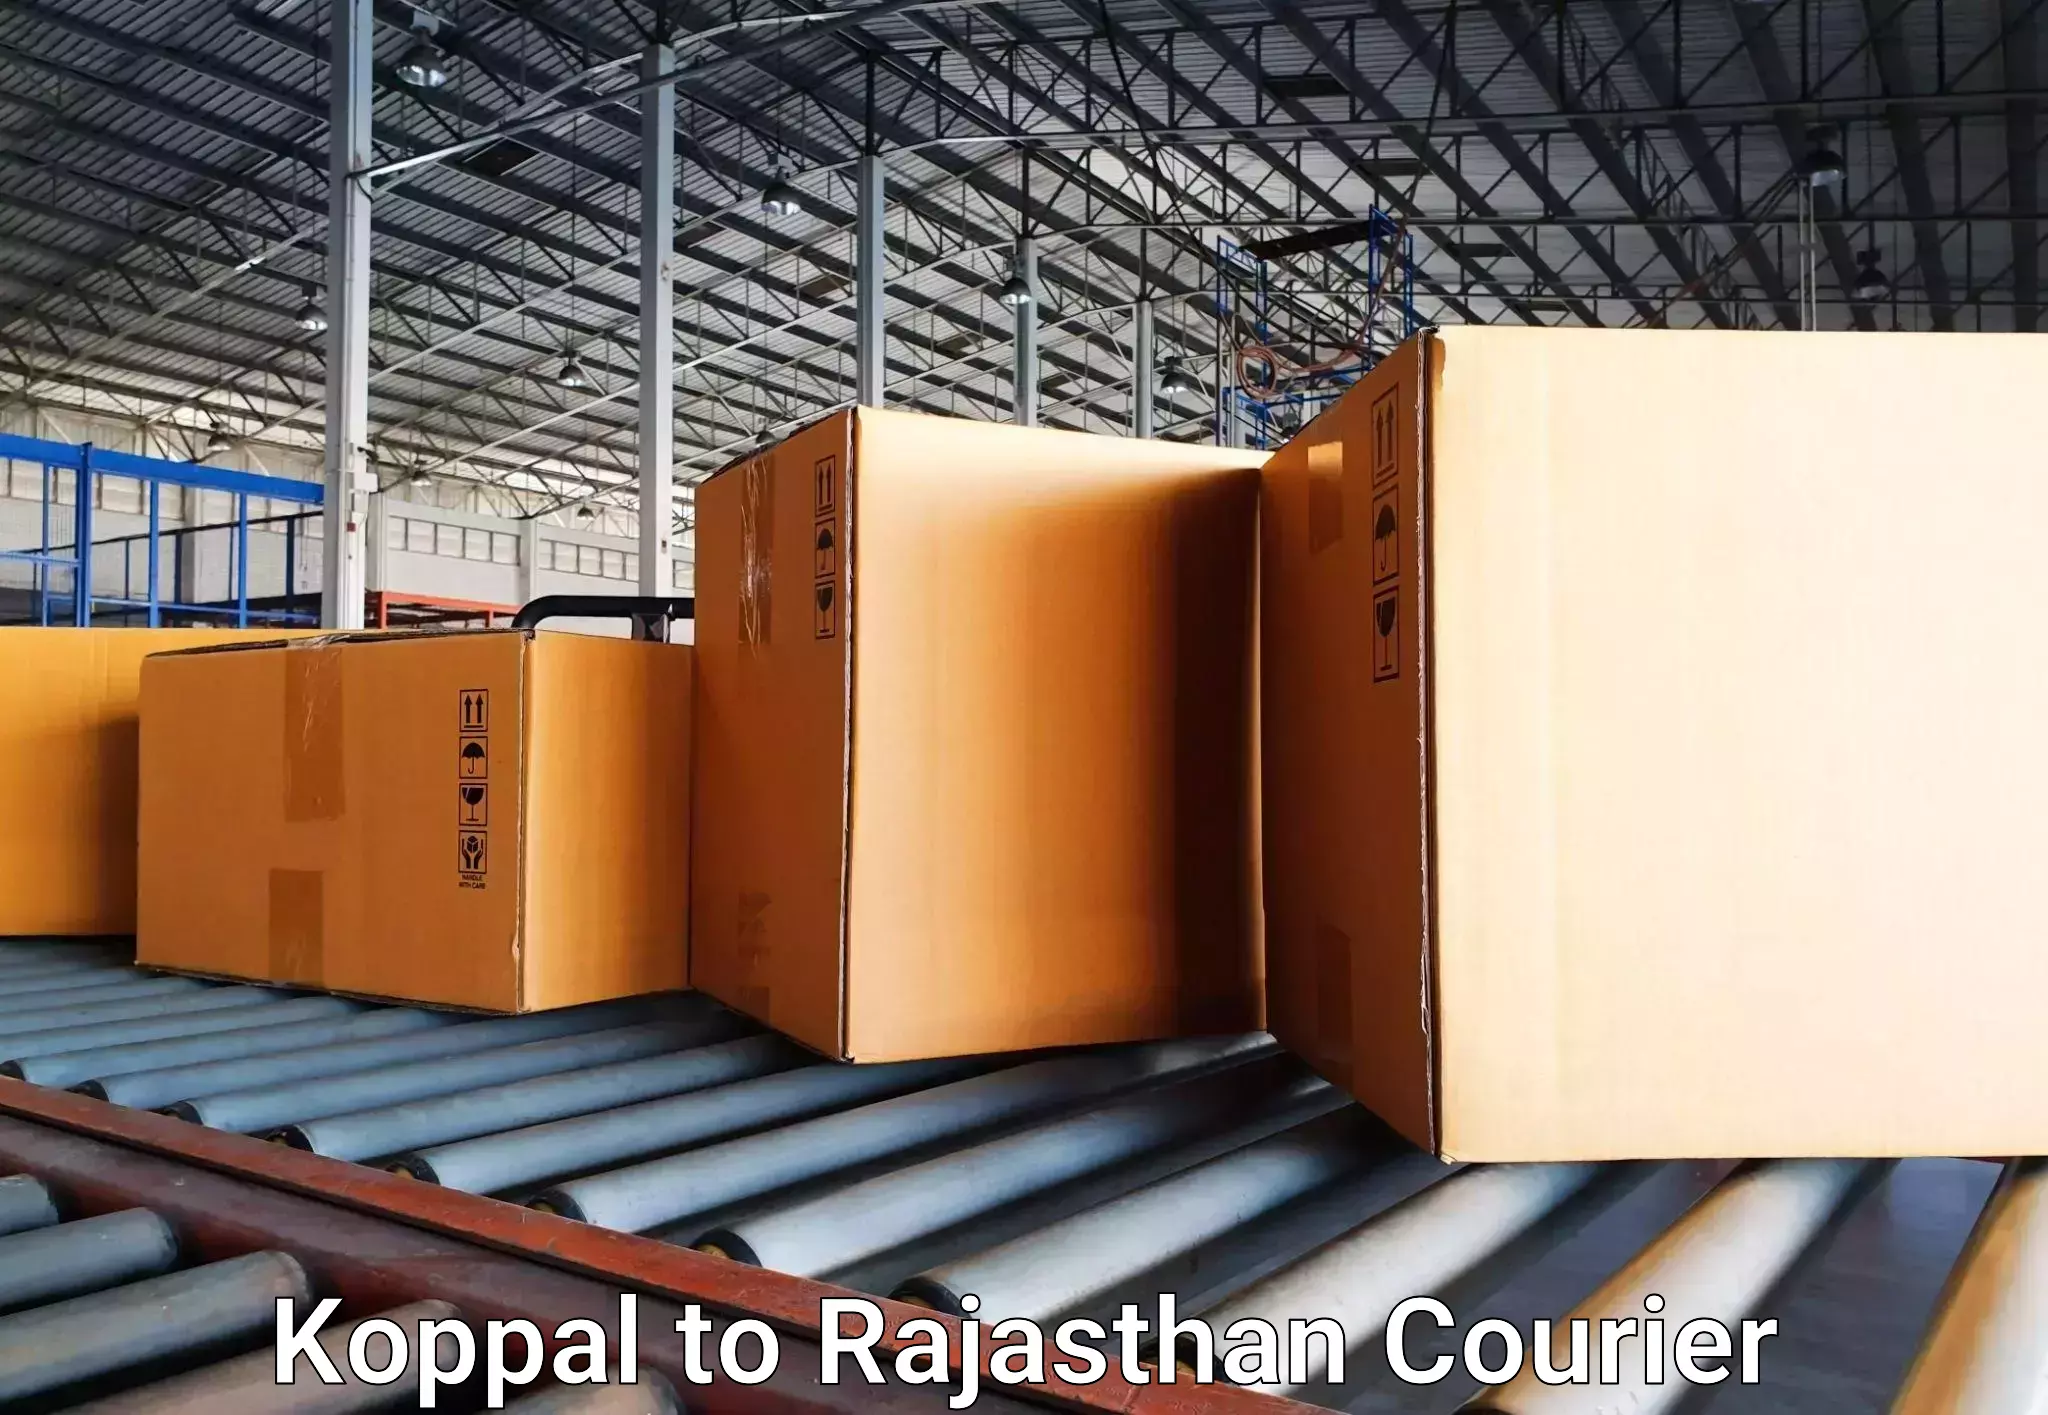 Baggage transport technology Koppal to Keshoraipatan